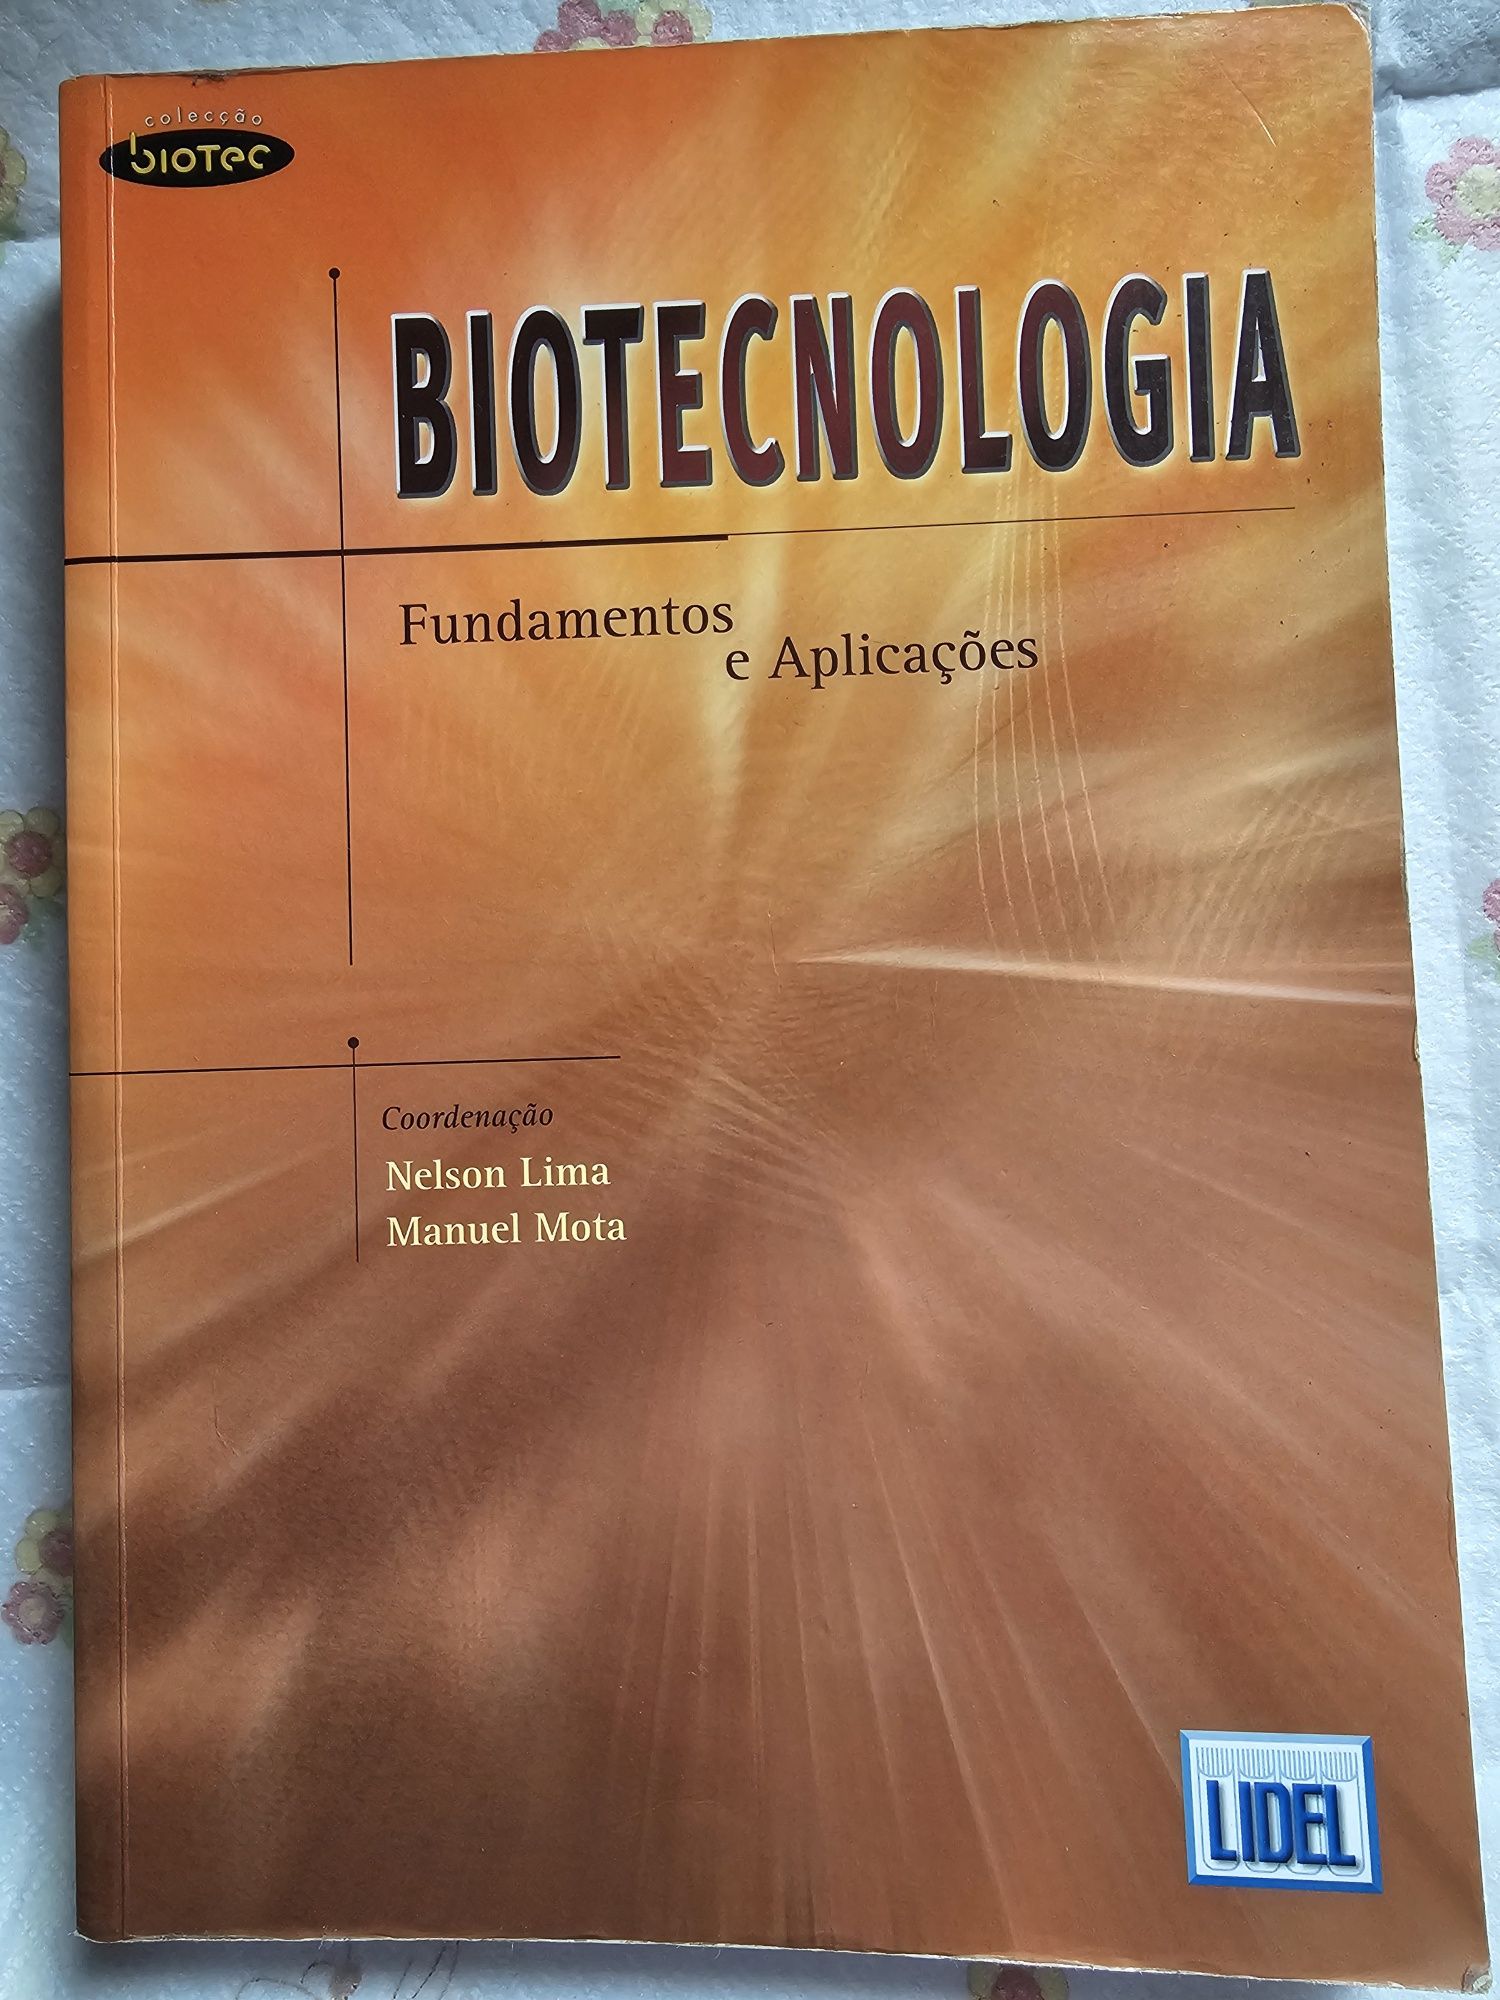 Biotecnologia - Fundamentos e Aplicações de Nelson Lima e Manuel Mota